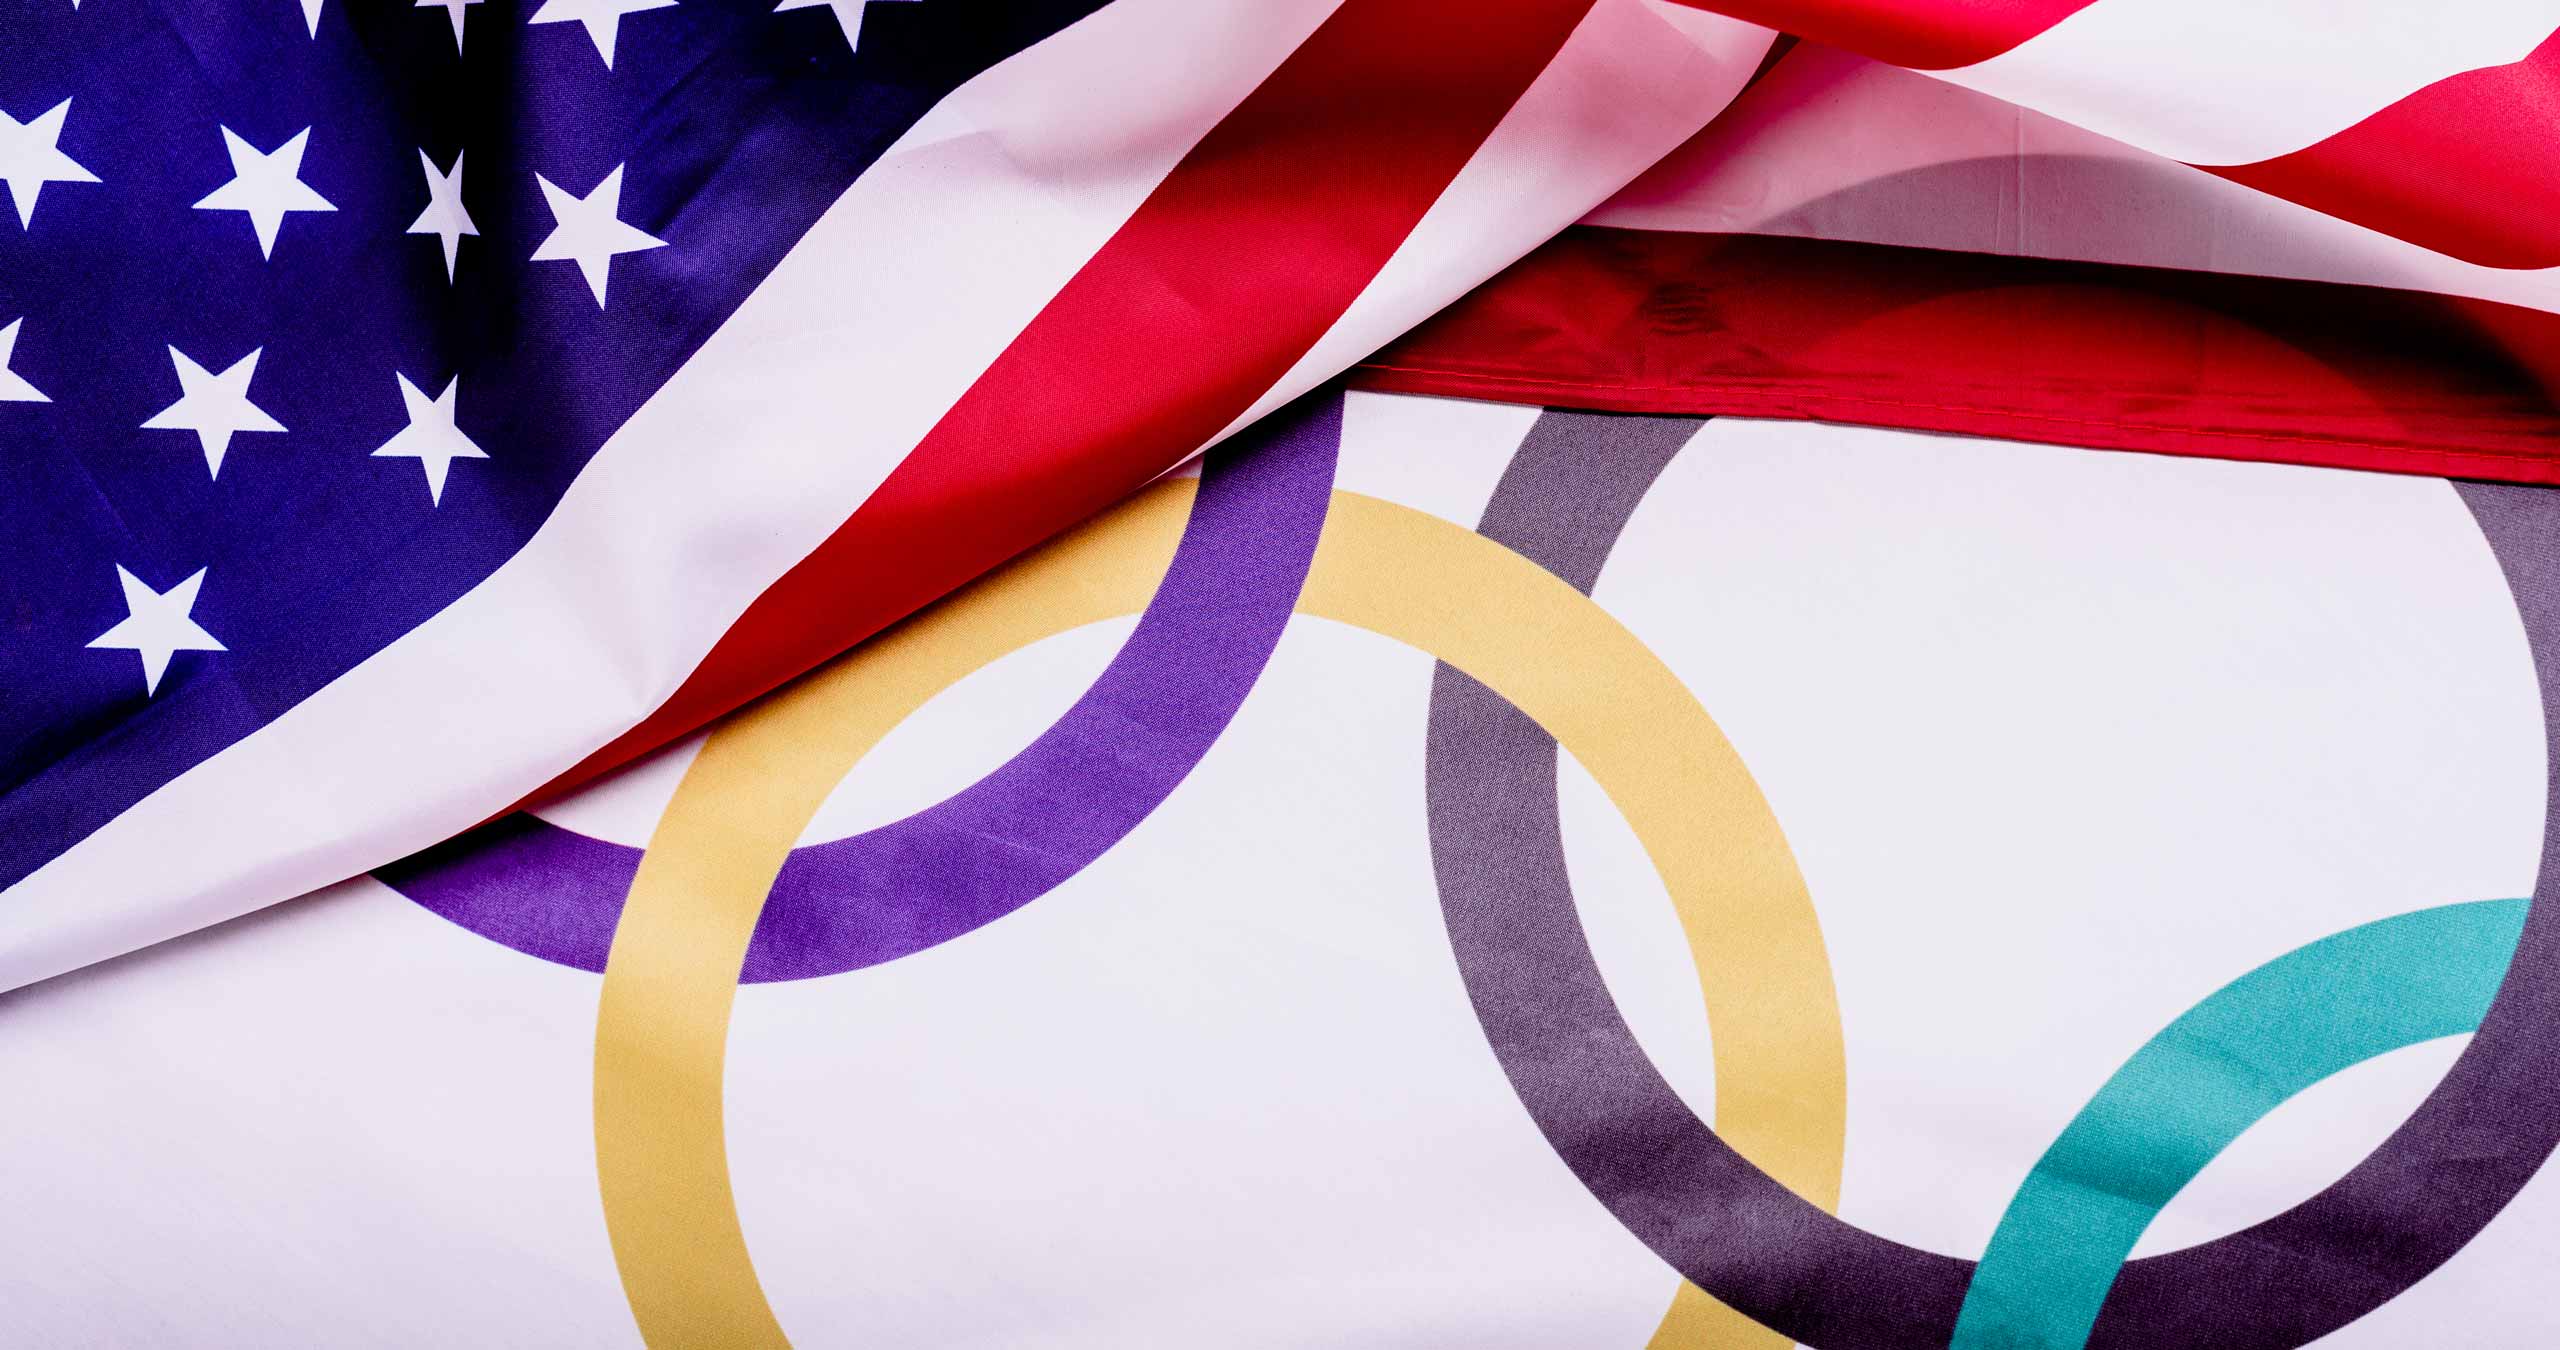 Кольцо америки на олимпиаде. Флаг олимпийского комитета США. Олимпиаду про Северную Америку. Флаг США 2022.